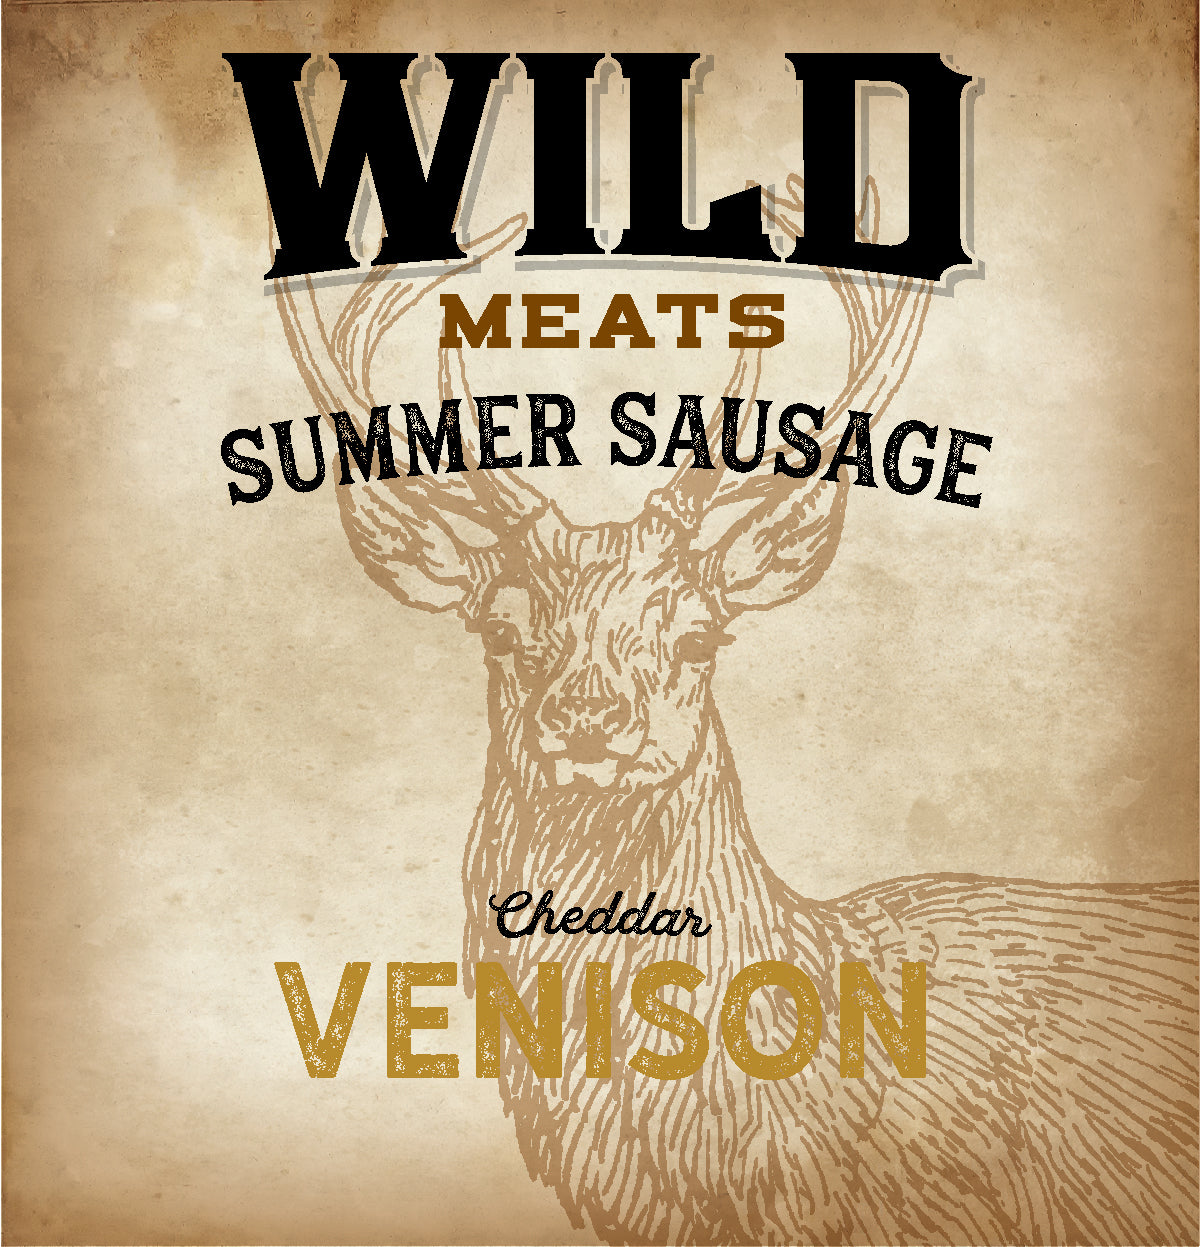 Summer Sausage - Venison Cheddar